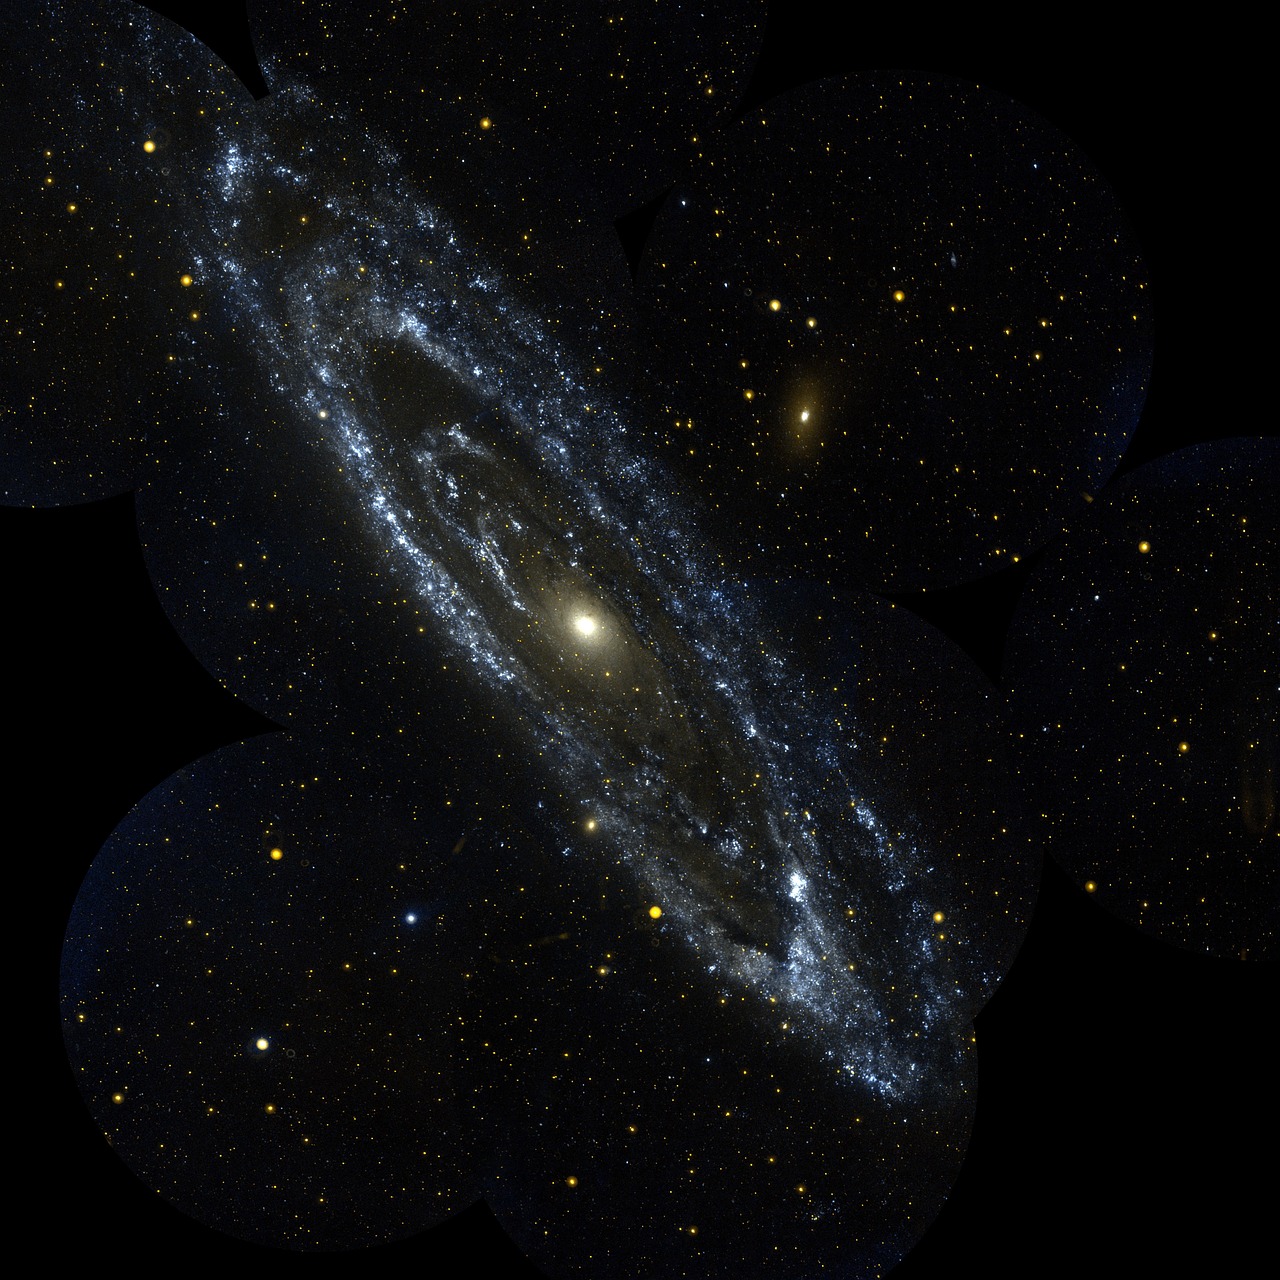 La Galaxia de Andrómeda: Un Objeto Astronómico de Fascinación